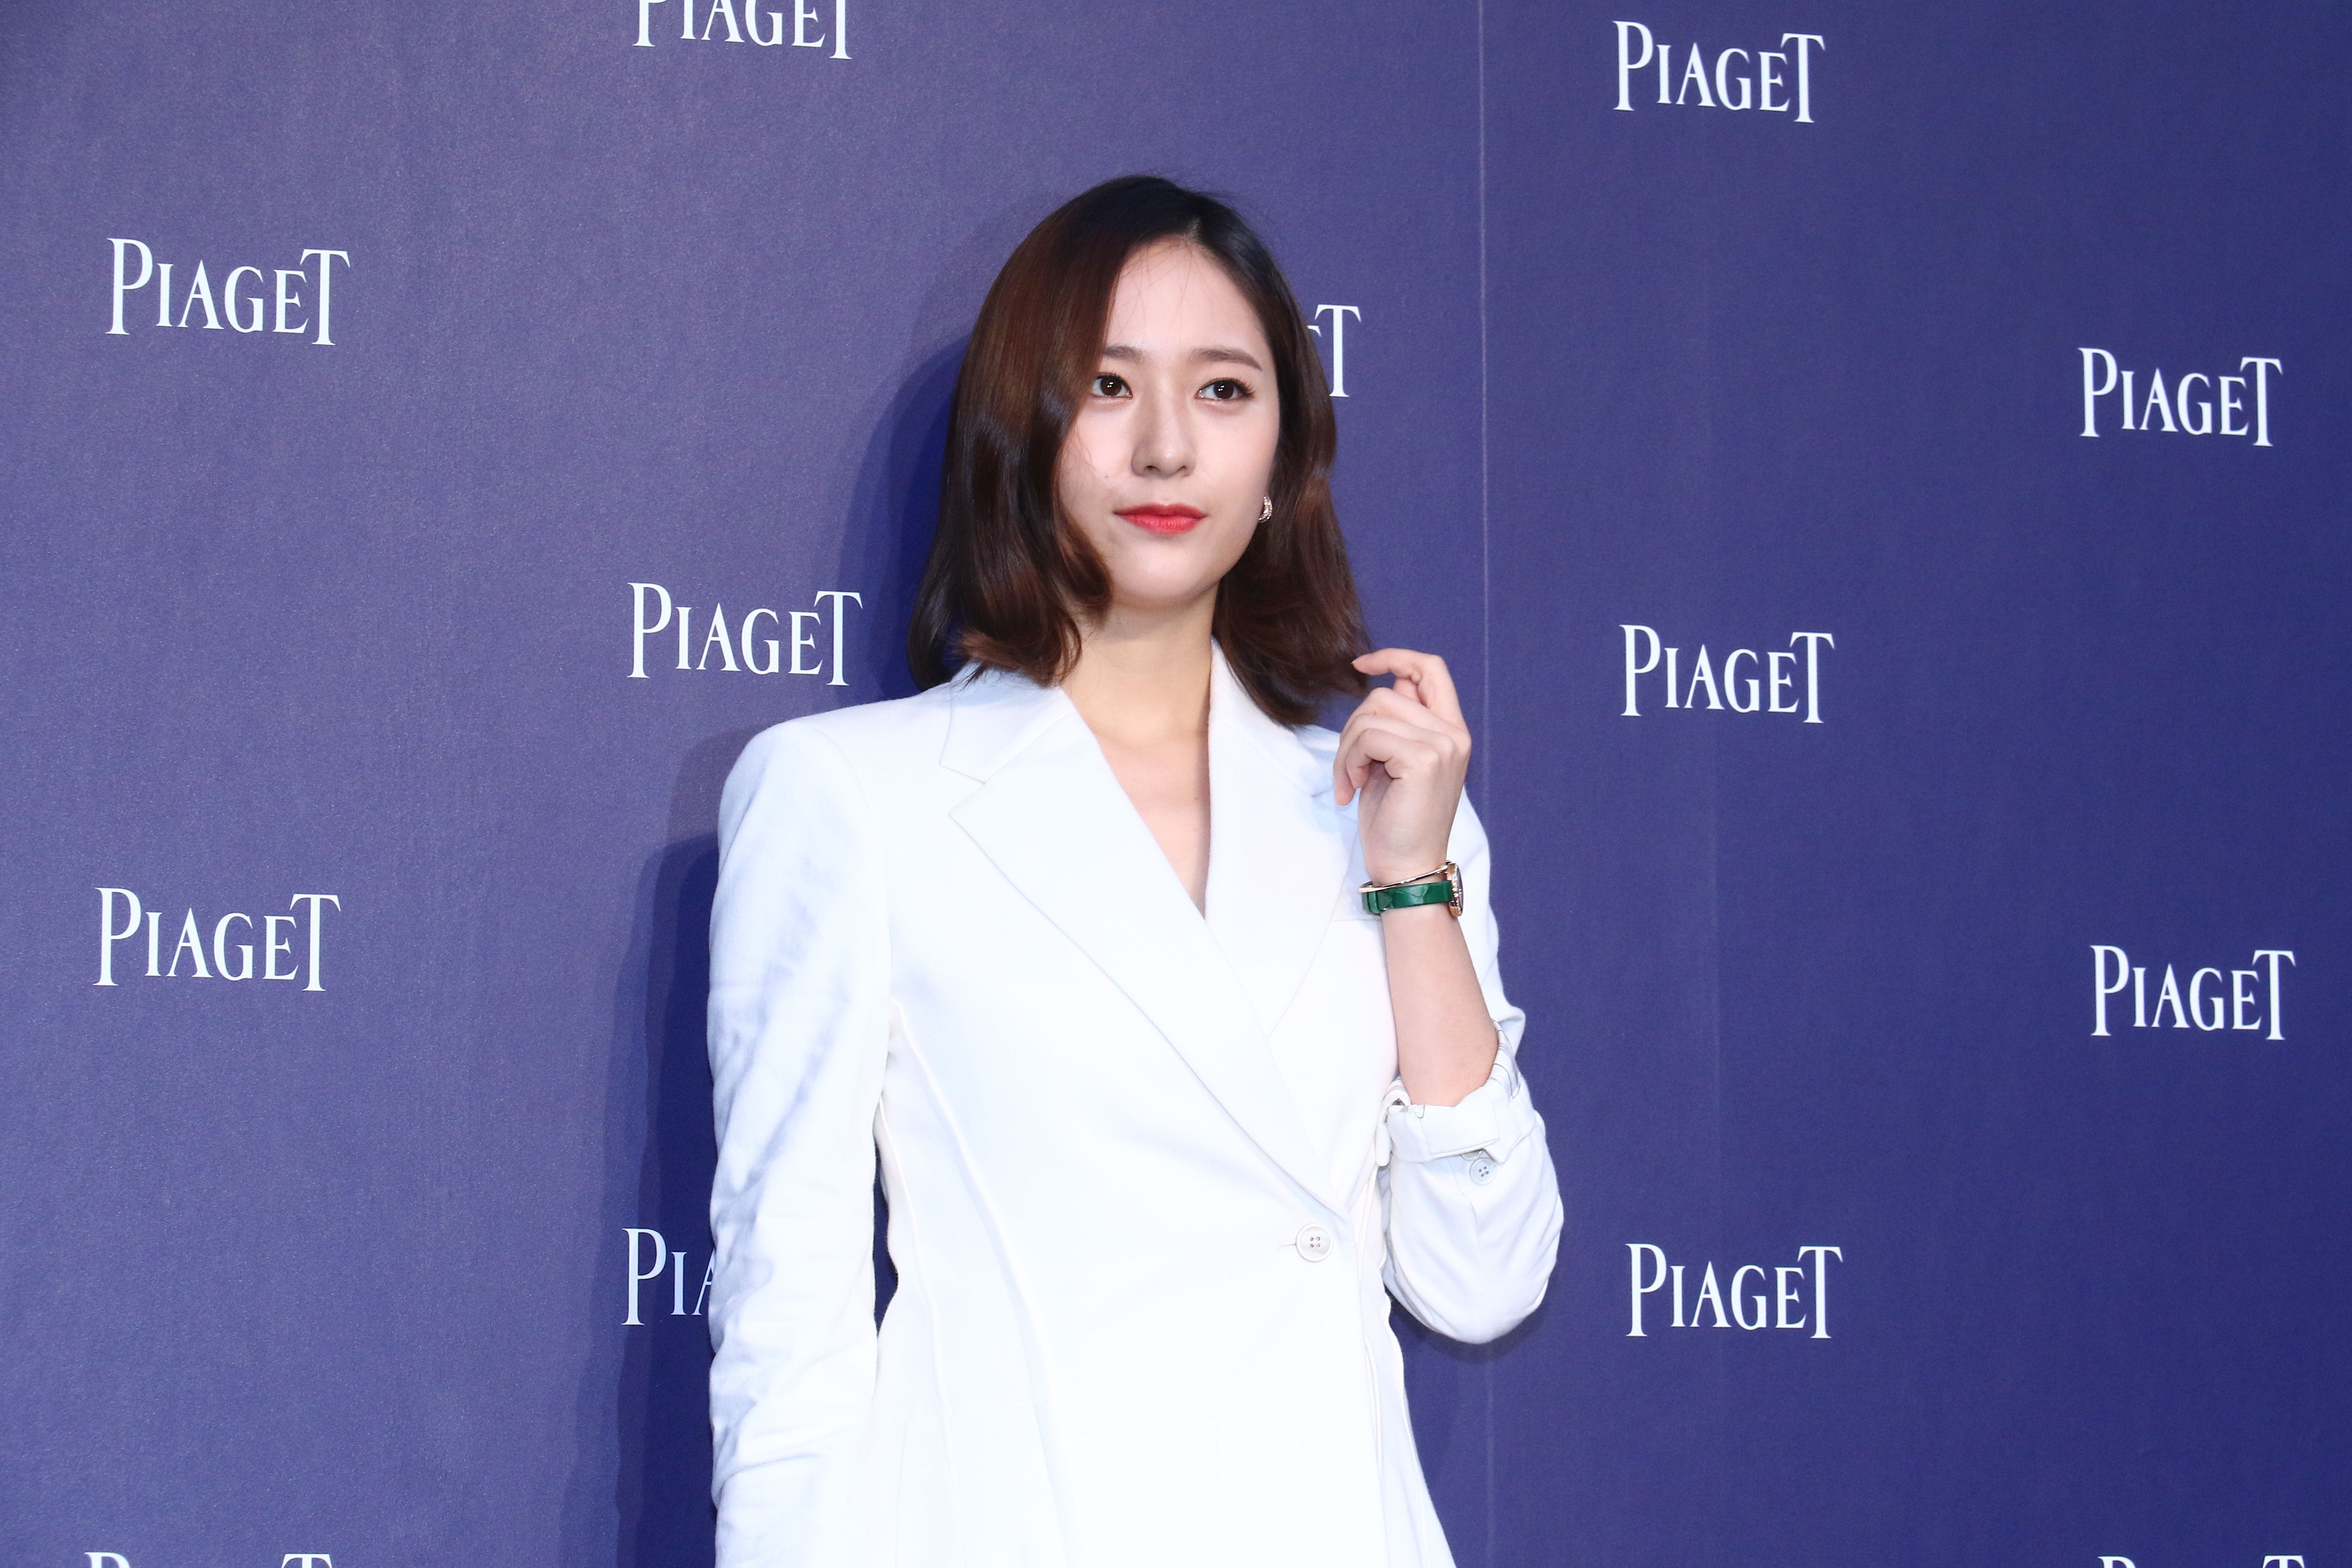 Krystal Jung 'Police University' wearing white blazer in front of purple backdrop